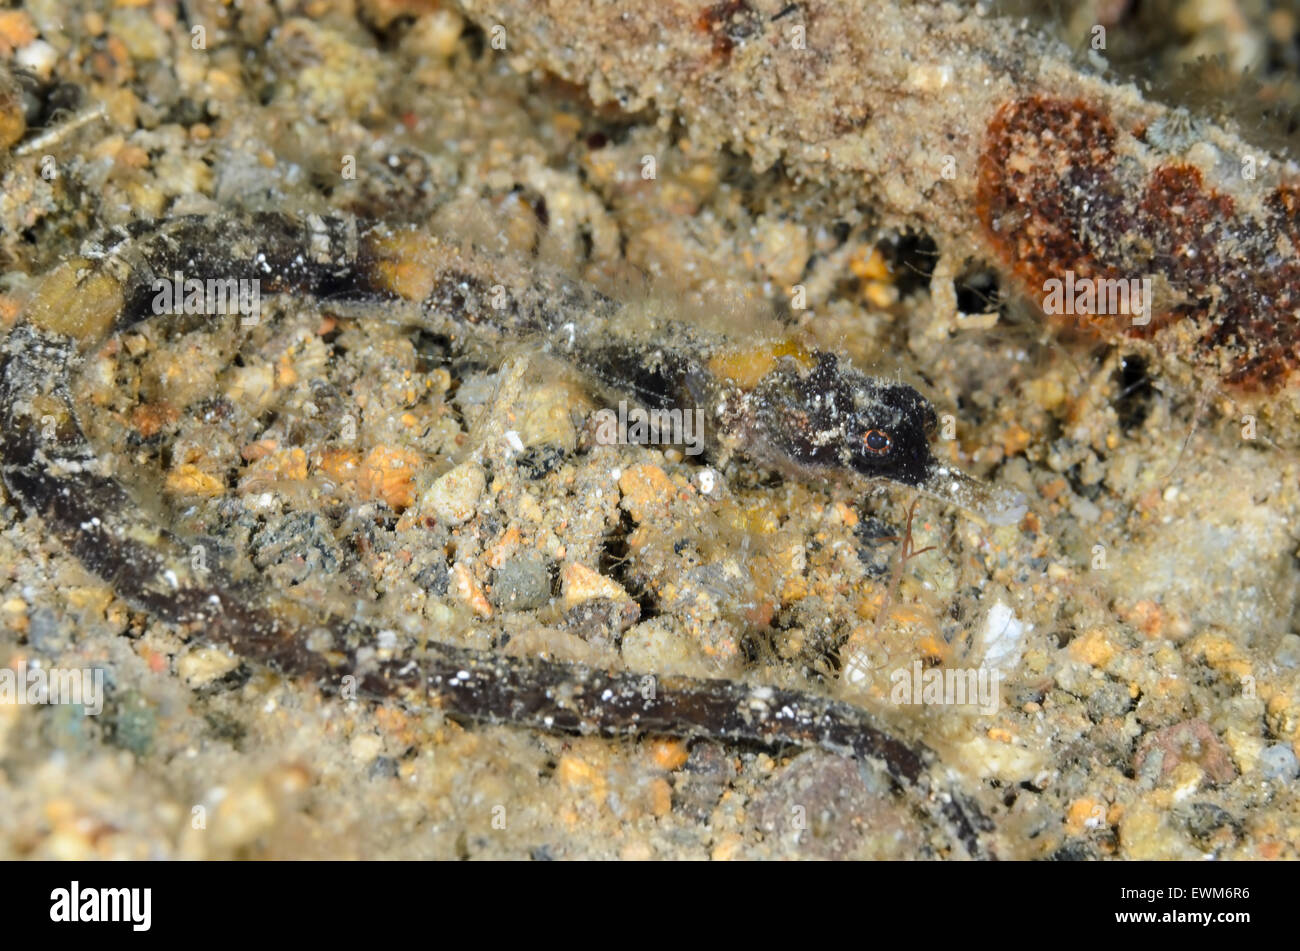 Pygmy pipefish, Micrognathus pygmaeus, Anilao, Batangas, Philippines, Pacific Stock Photo